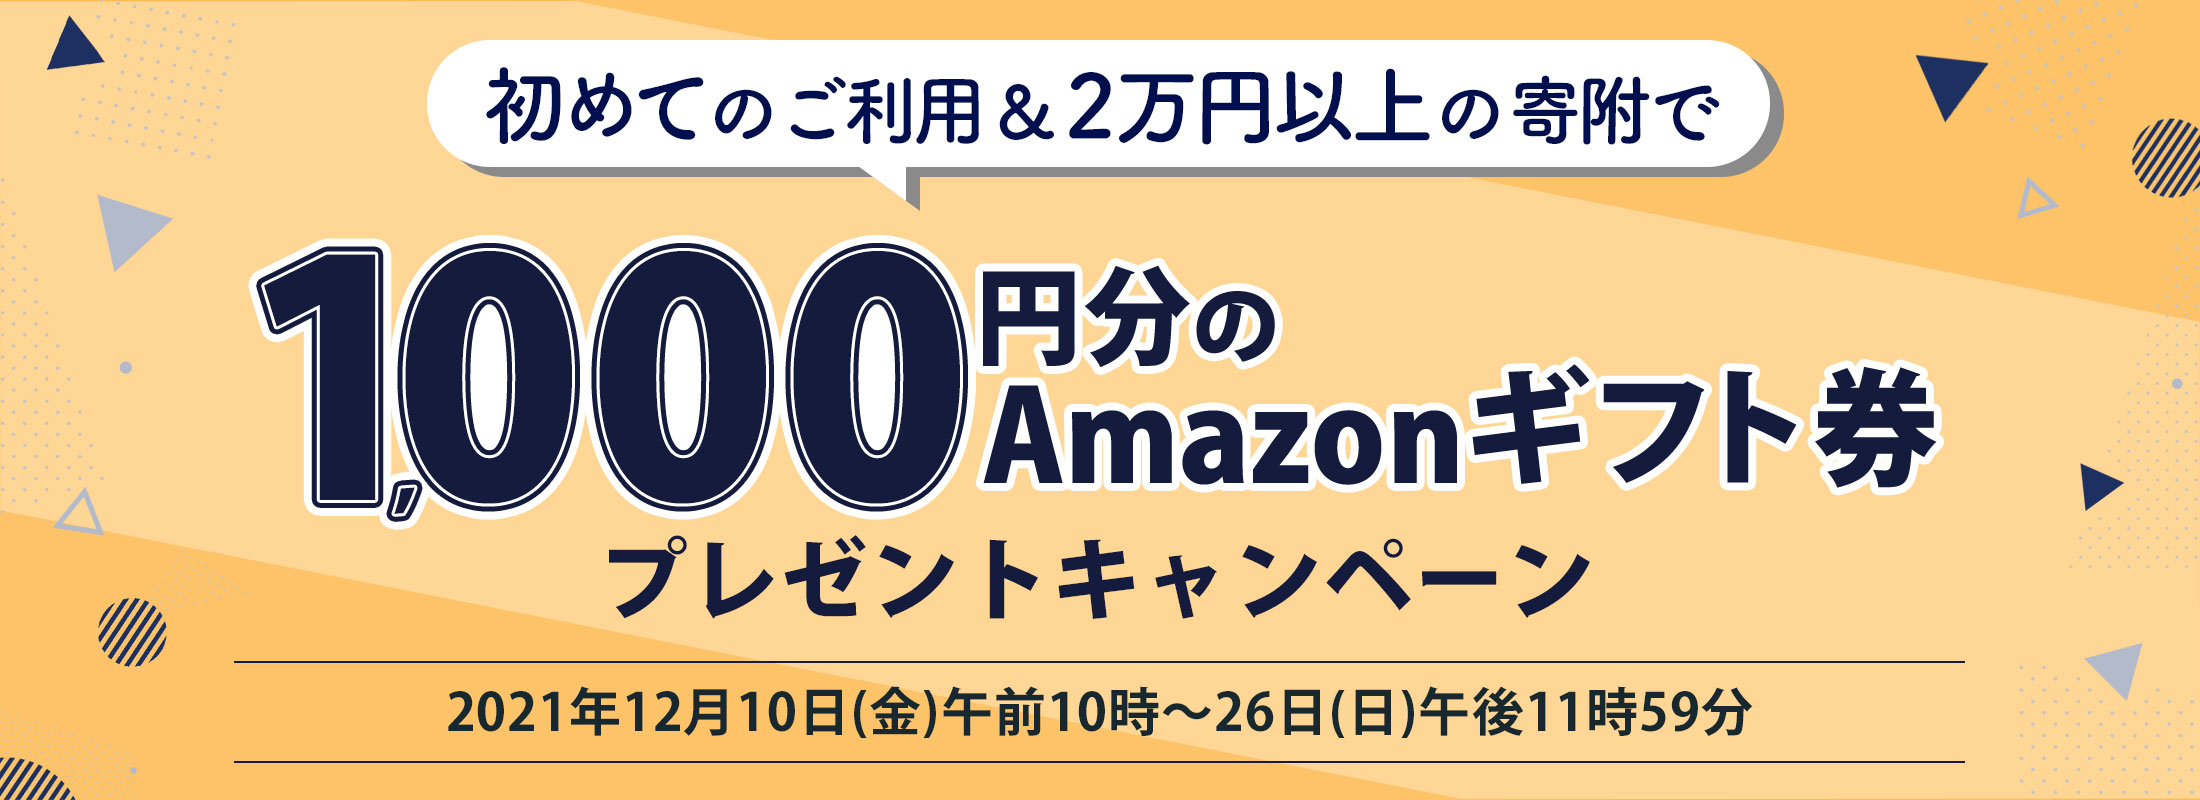 初めての寄附で1,000円分の「Amazonギフト券」プレゼントキャンペーン